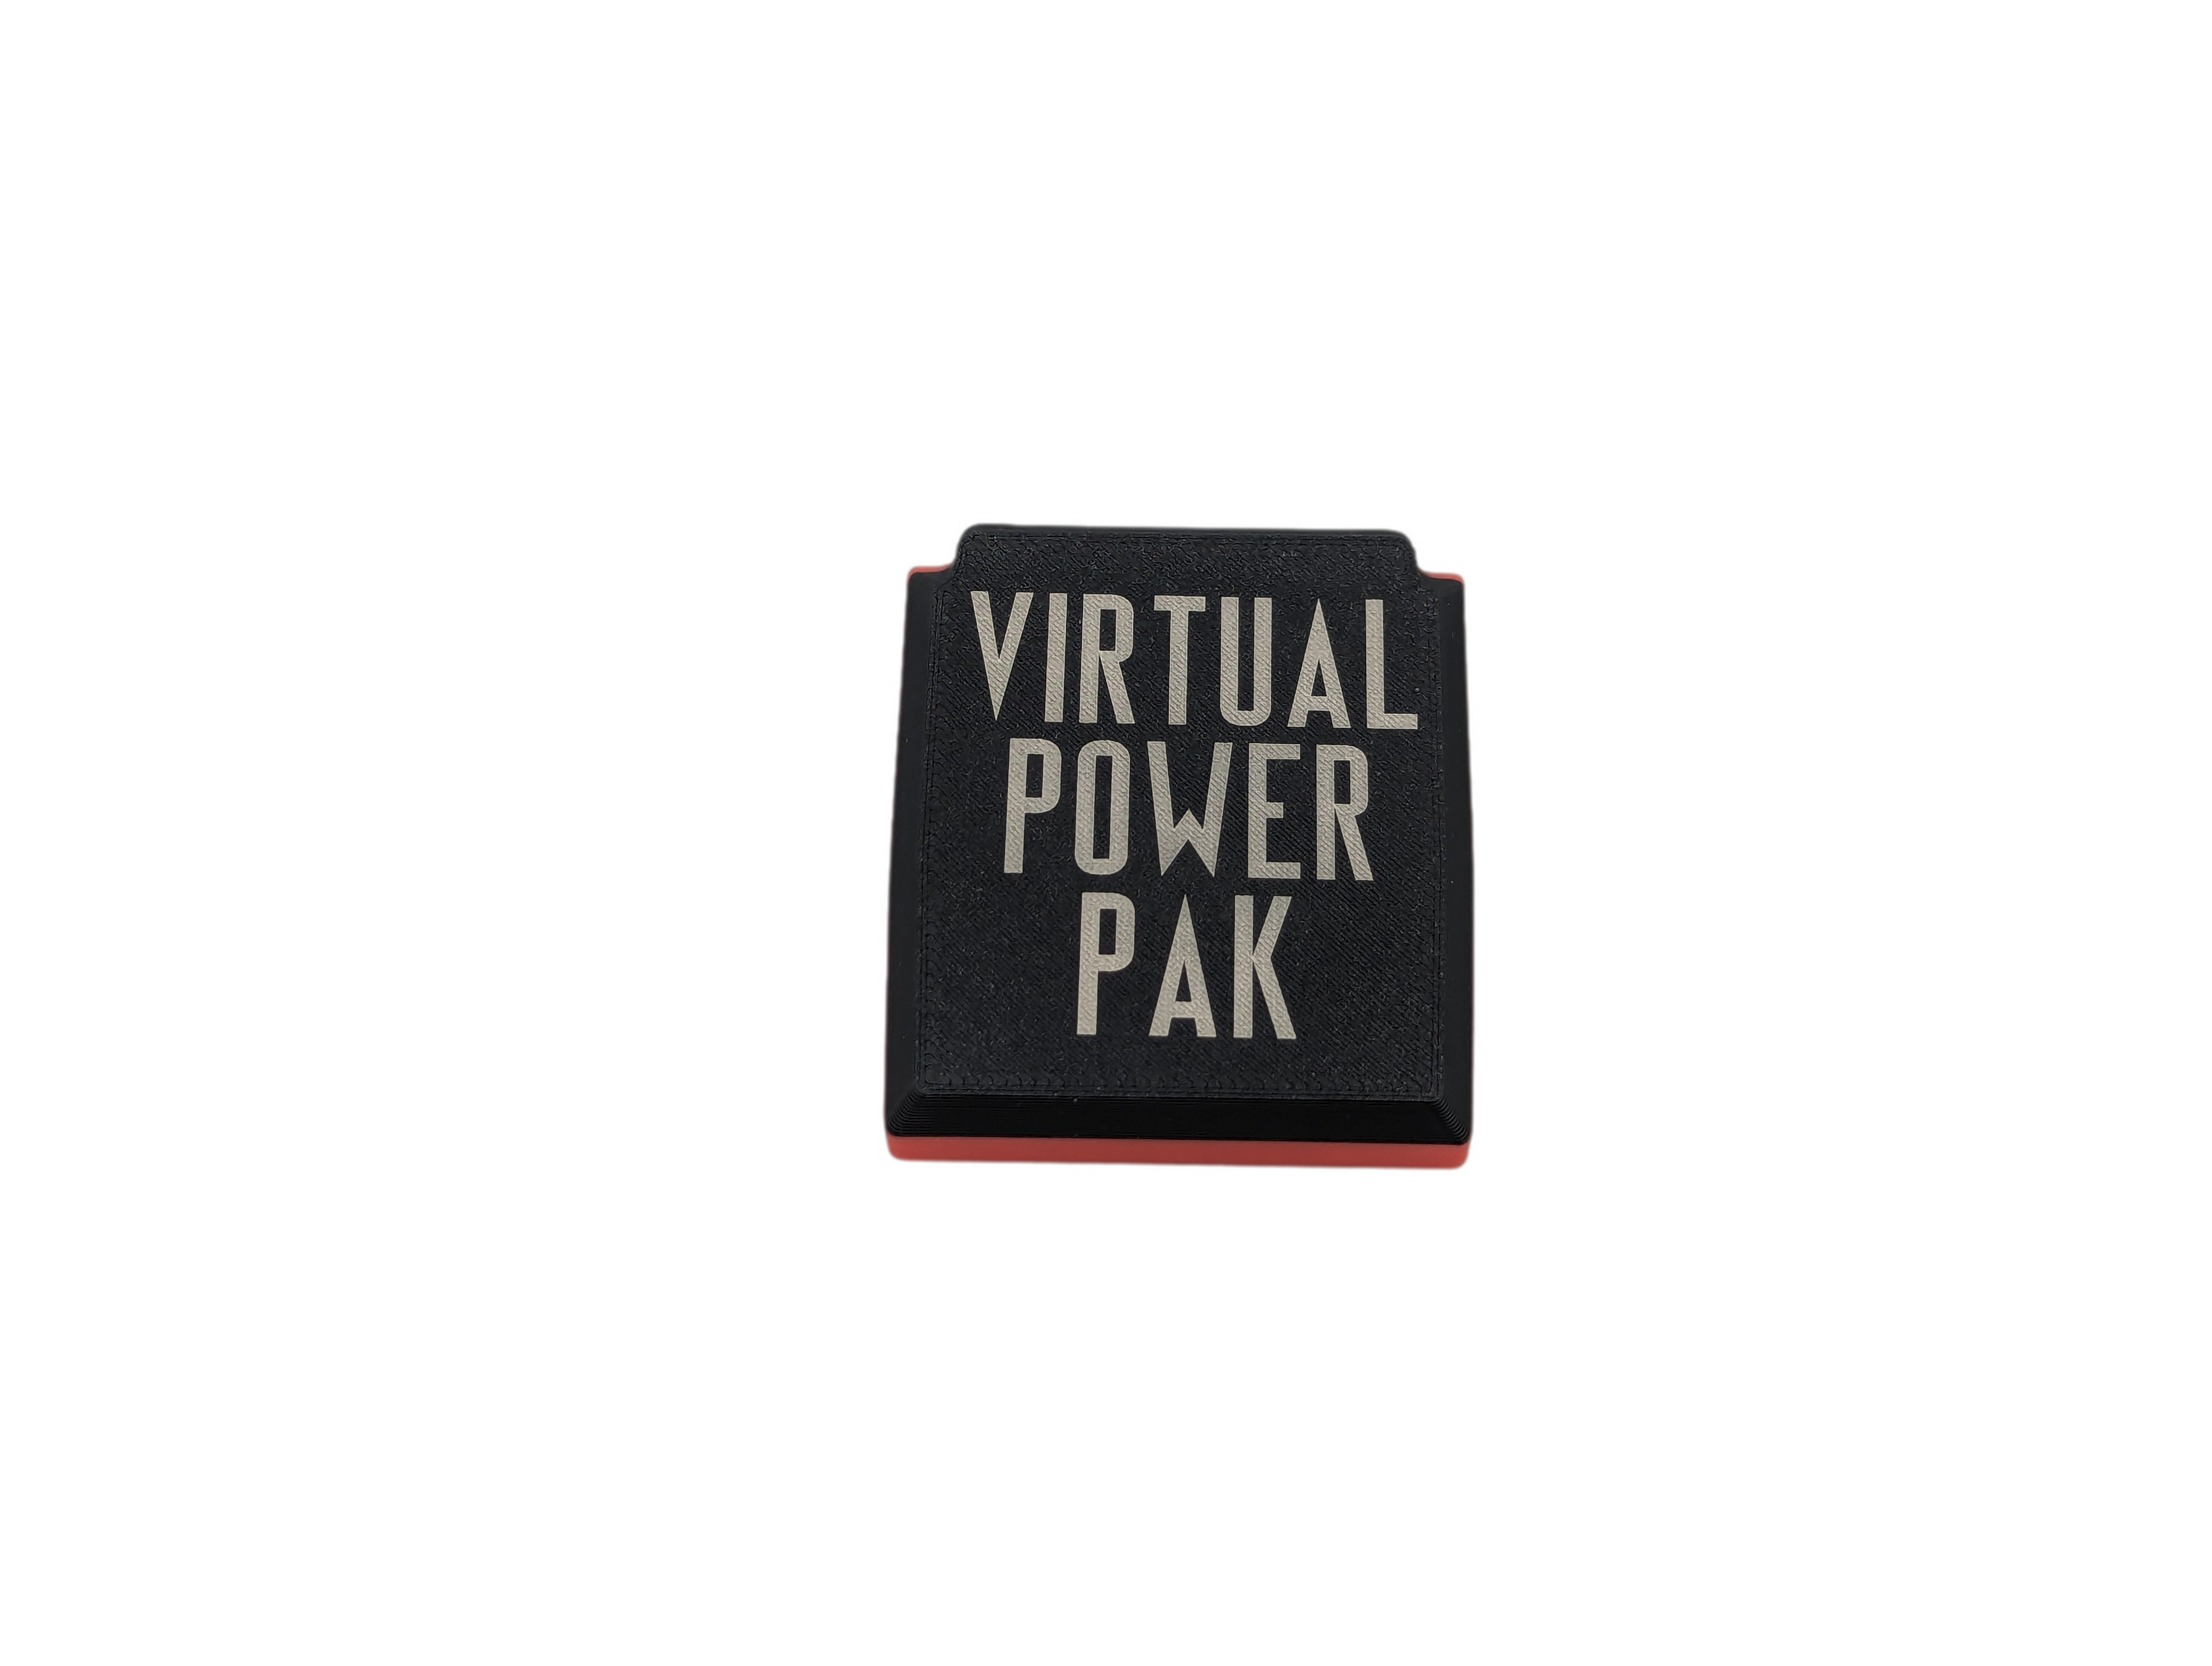 Virtual Boy Power Pak